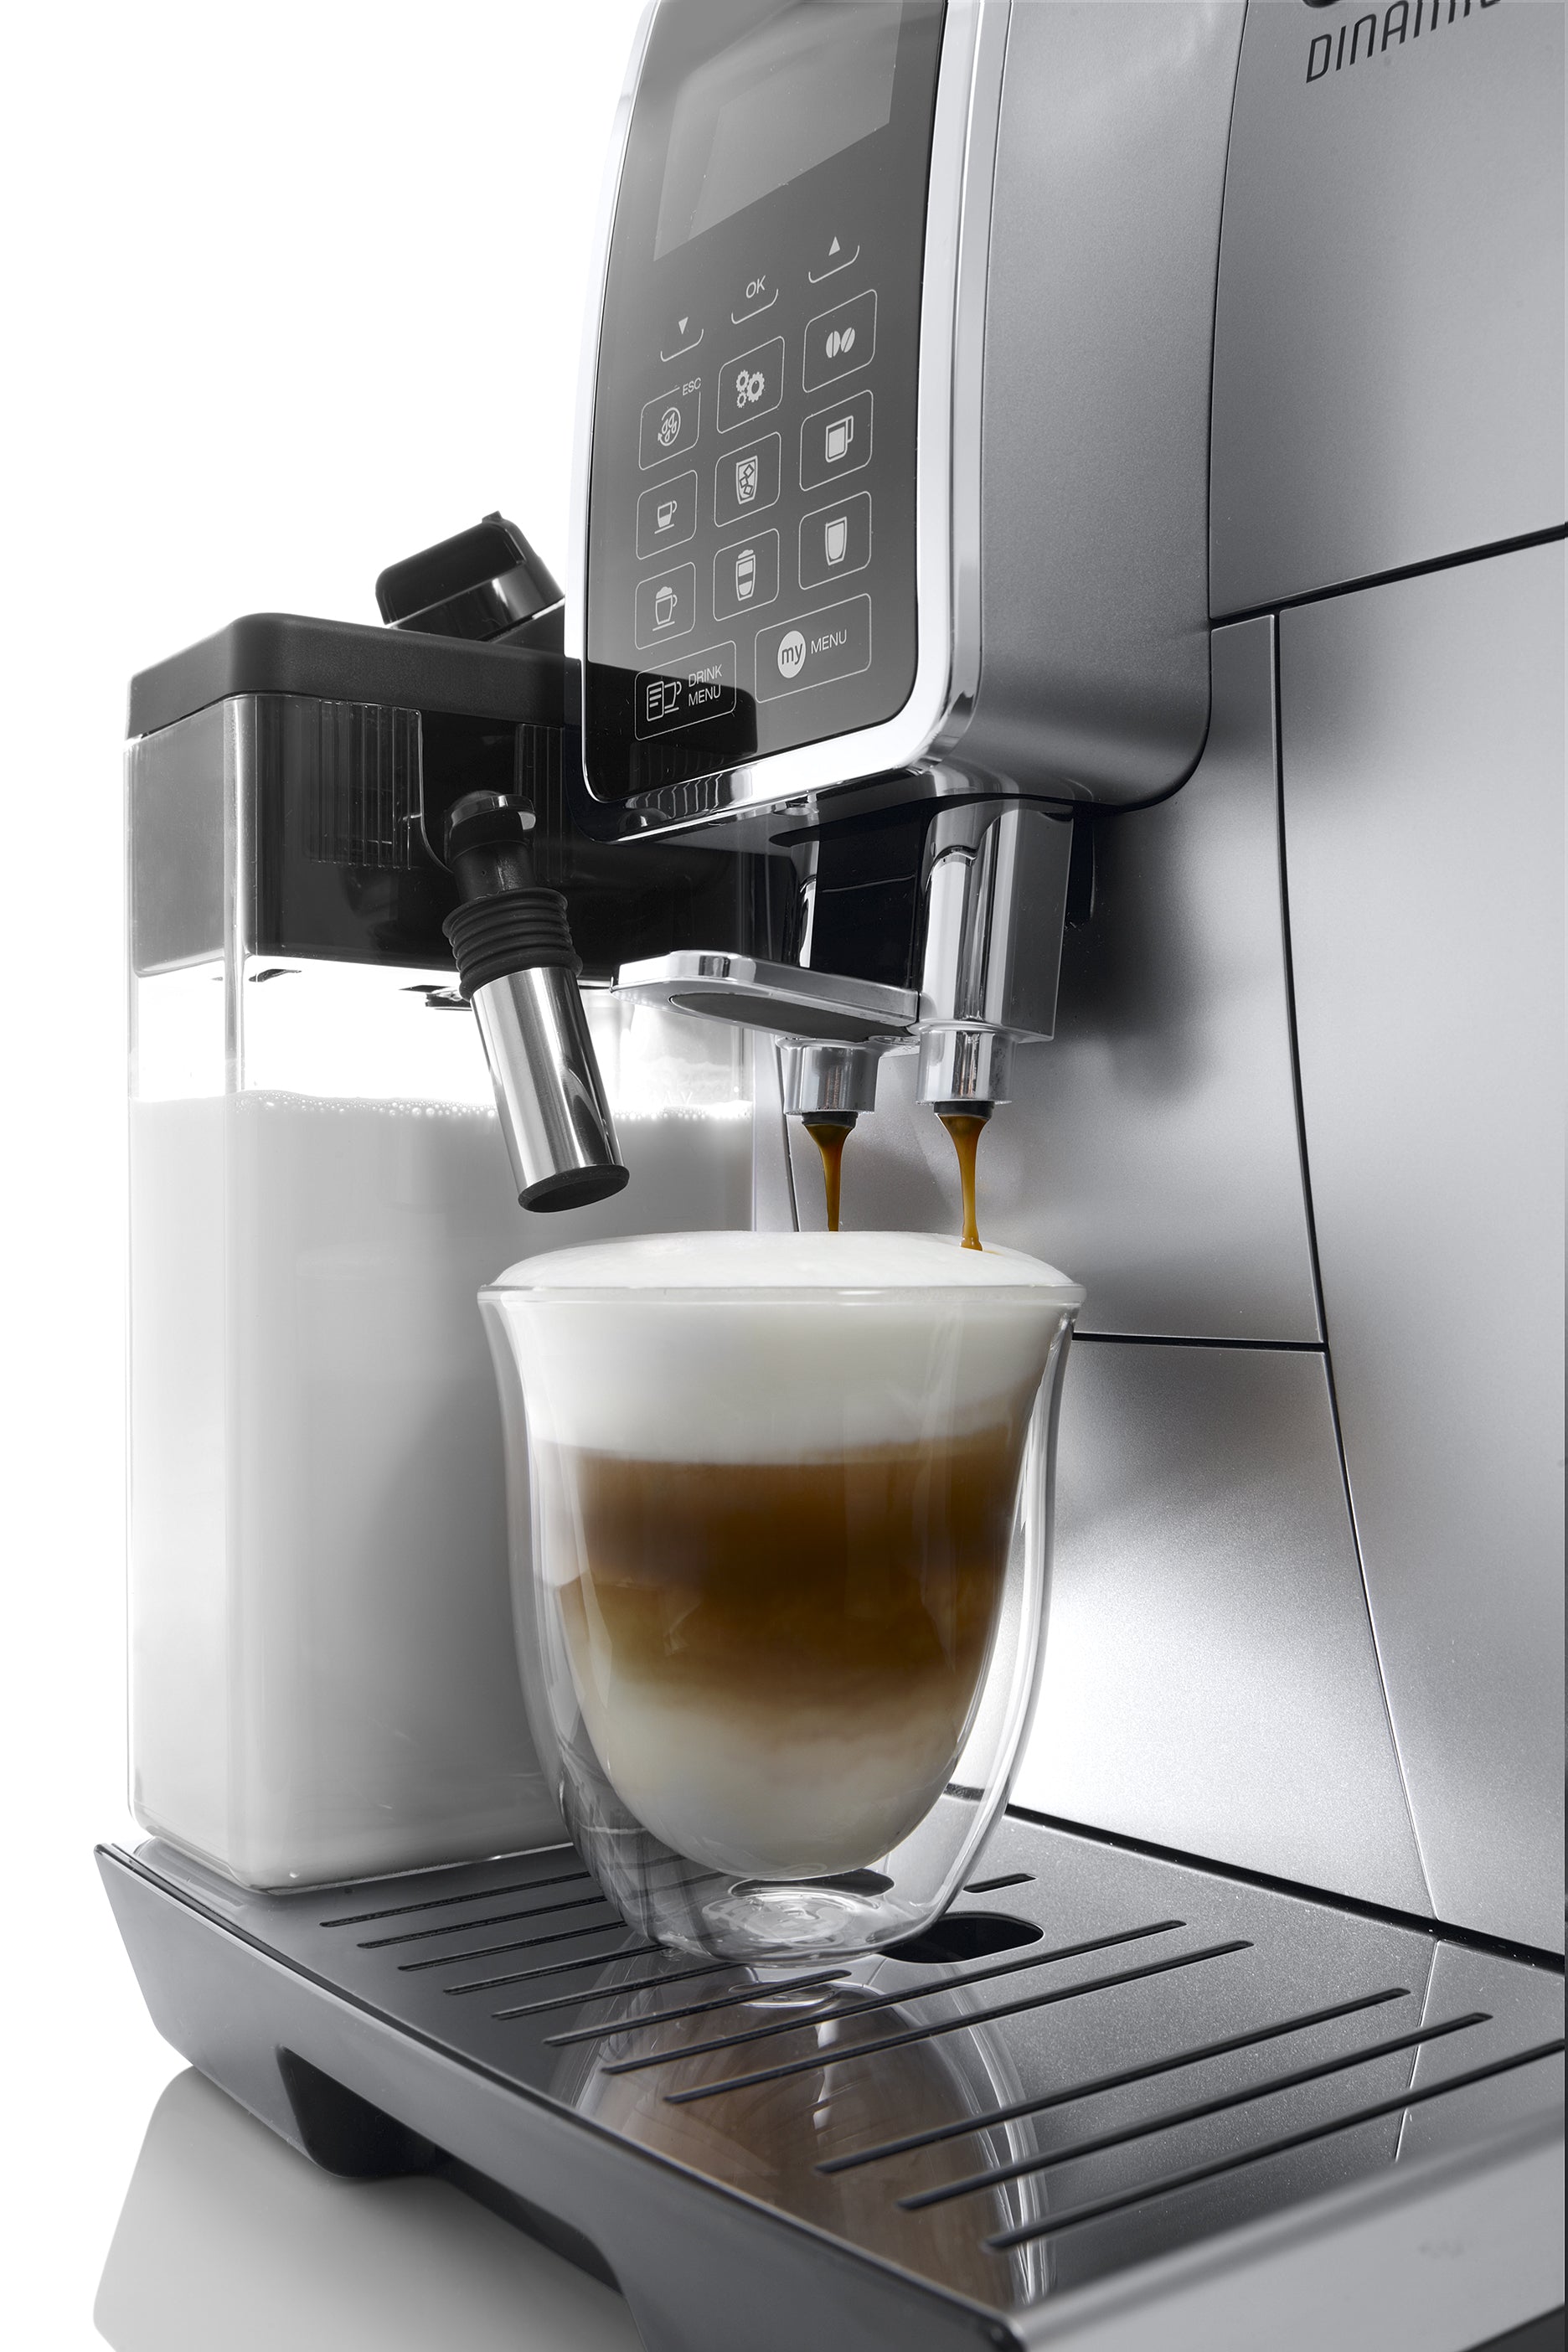 DeLonghi Dinamica with Latte Crema Fully Automatic Coffee & Espresso  Machine